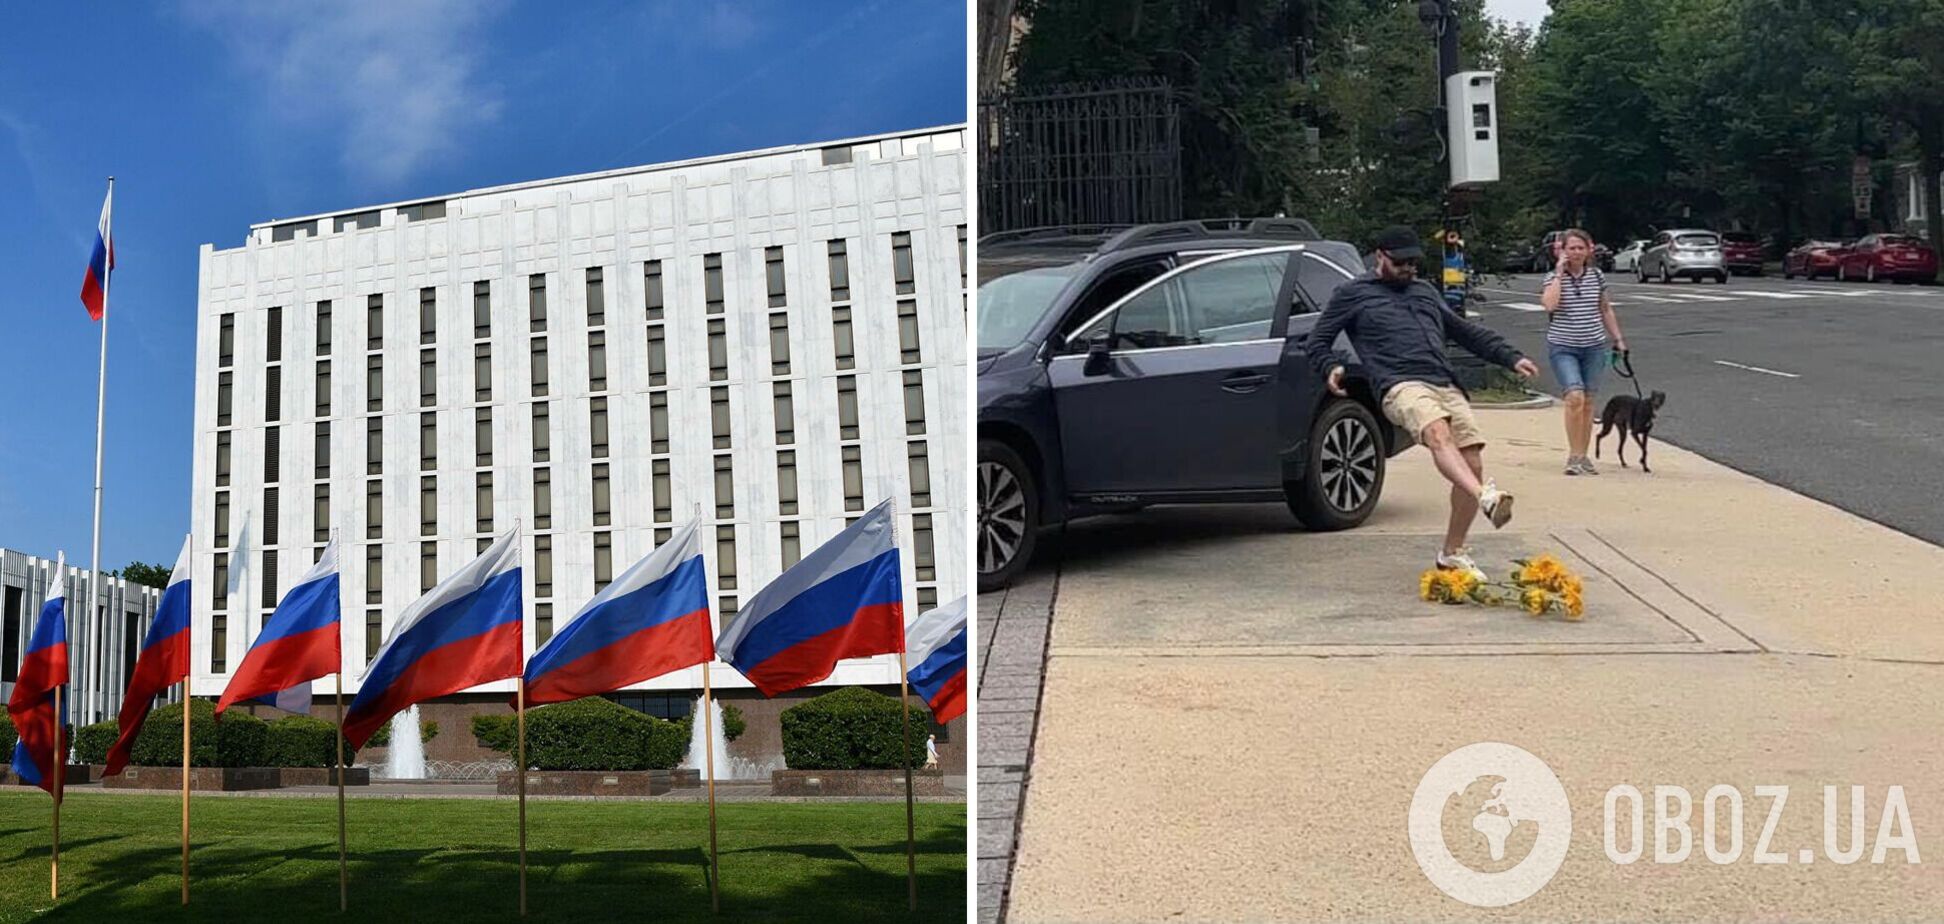 Співробітник посольства РФ в США розтоптав соняхи біля будівлі, які принесли діти. Фото 